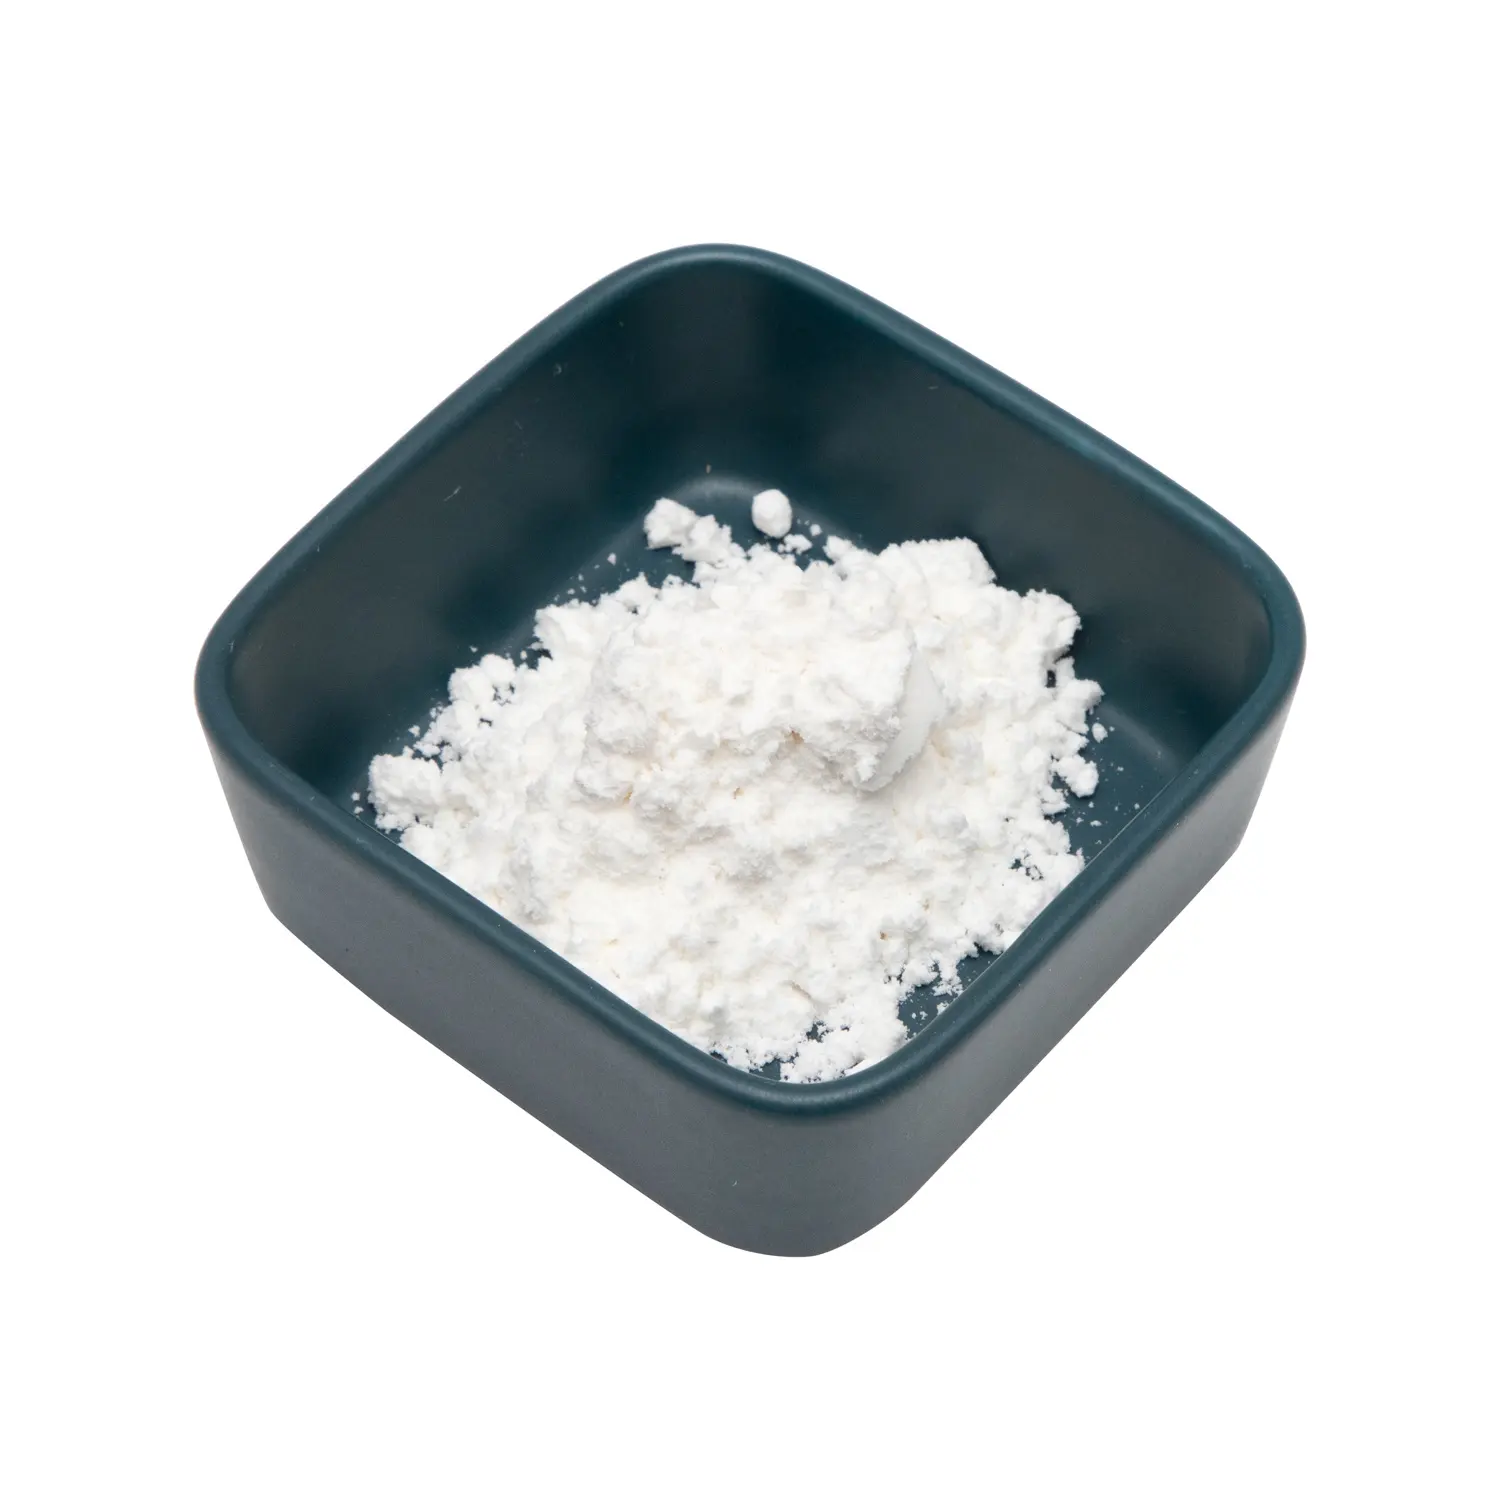 Poudre d'acide ursolique d'extrait de feuille de Loquat de haute qualité d'approvisionnement d'usine 98% CAS 77-52-1 poudre blanche alimentaire feuille de guimauve sauvage